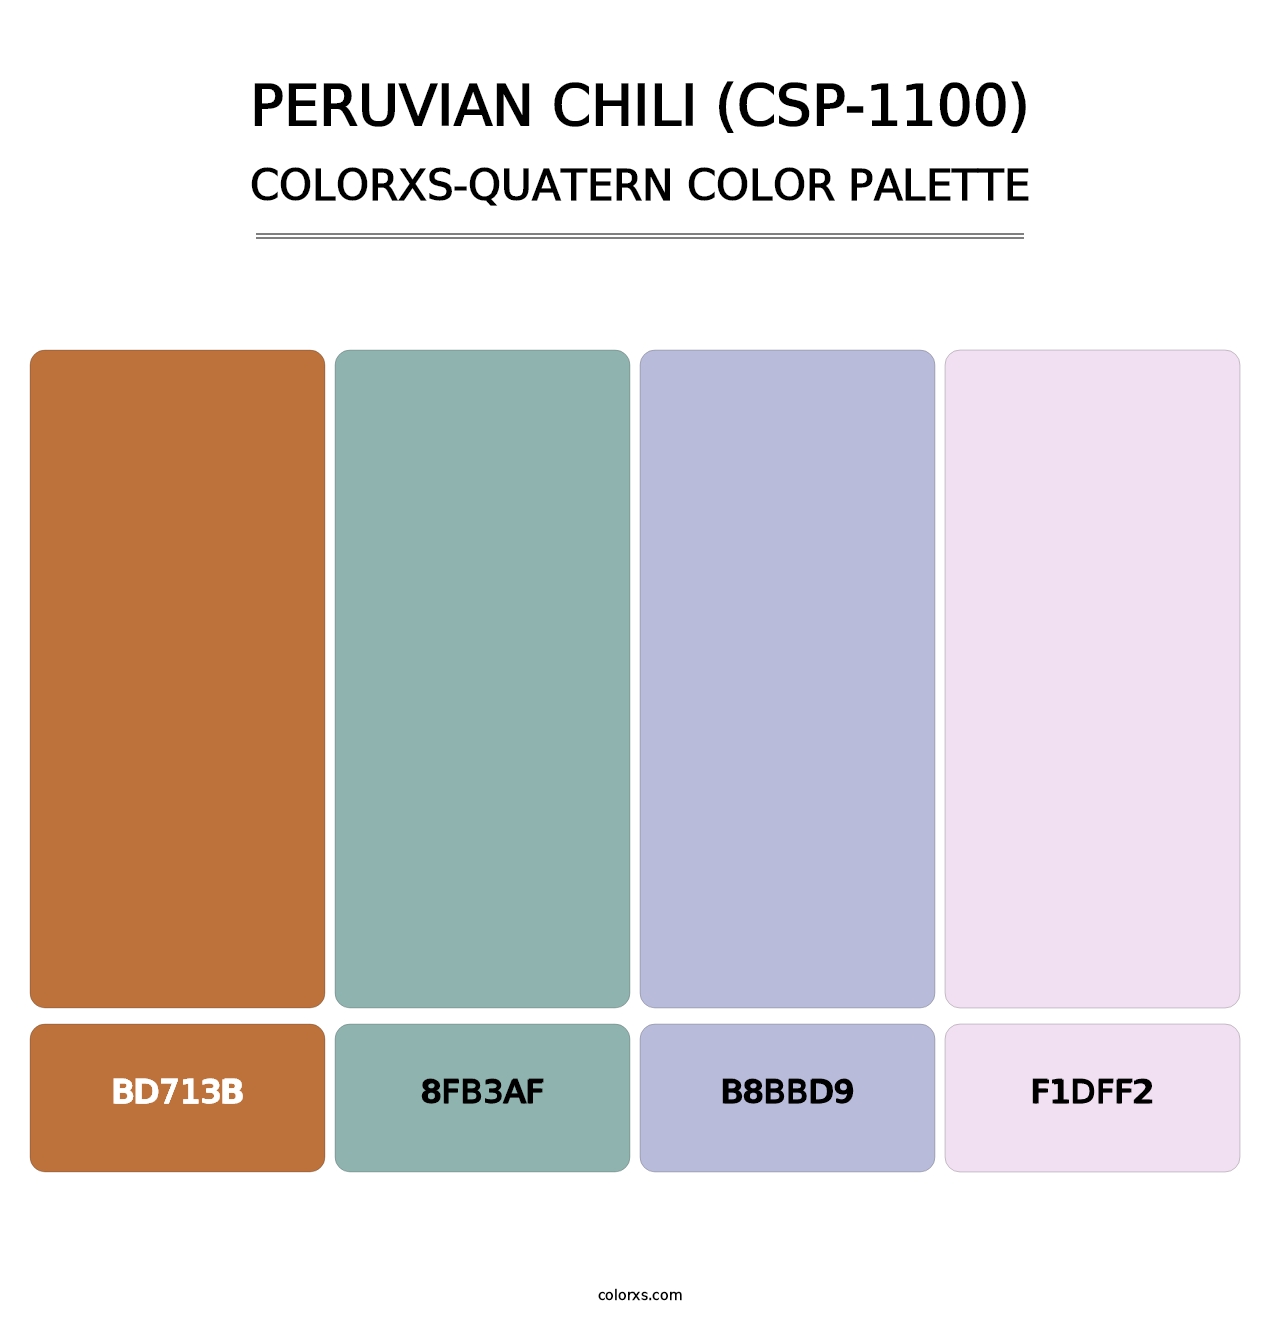 Peruvian Chili (CSP-1100) - Colorxs Quatern Palette